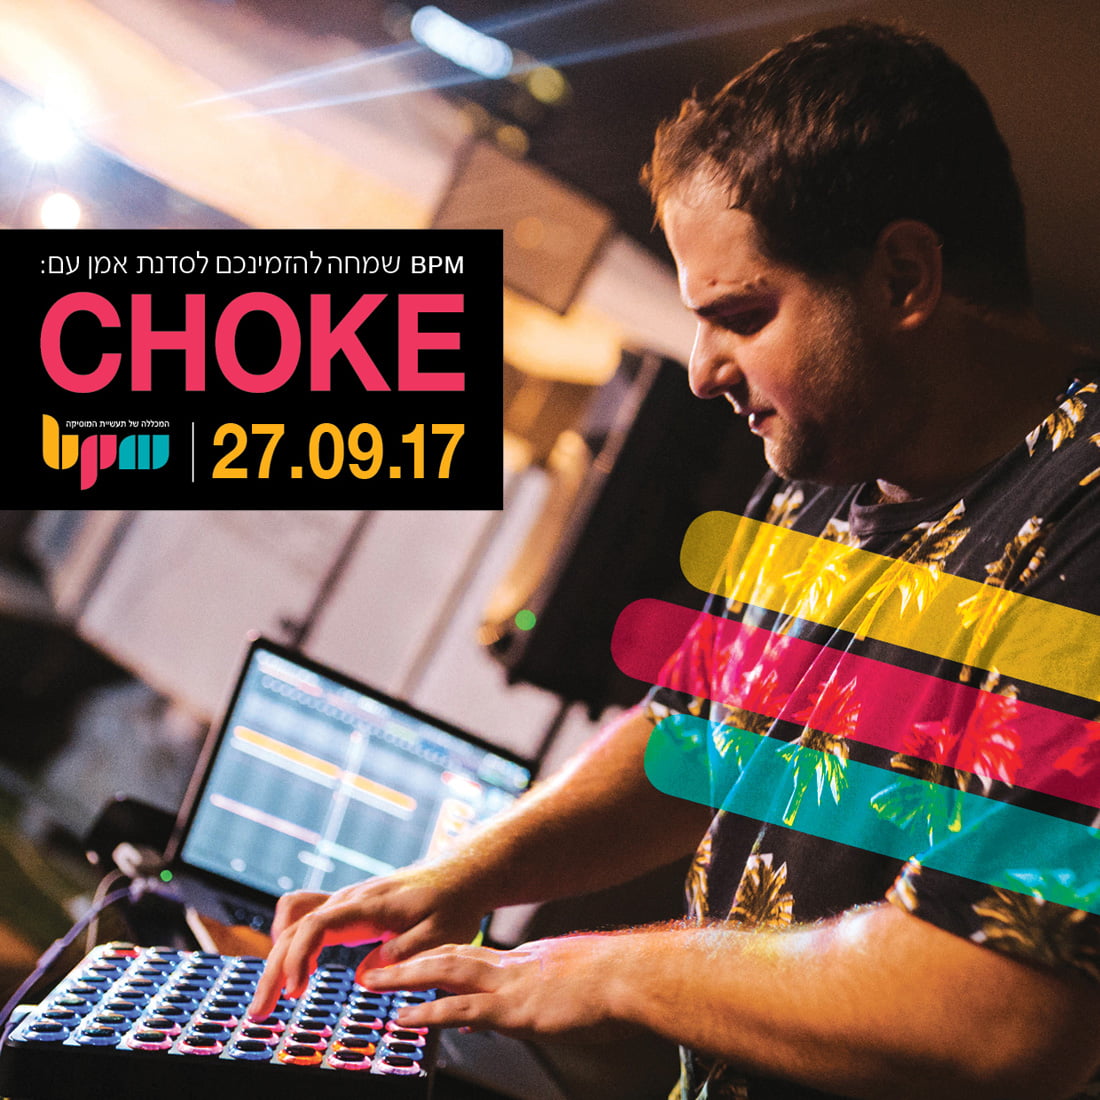 צפו בסדנת האמן עם Choke על הפקת ביטים ו-Finger Drumming